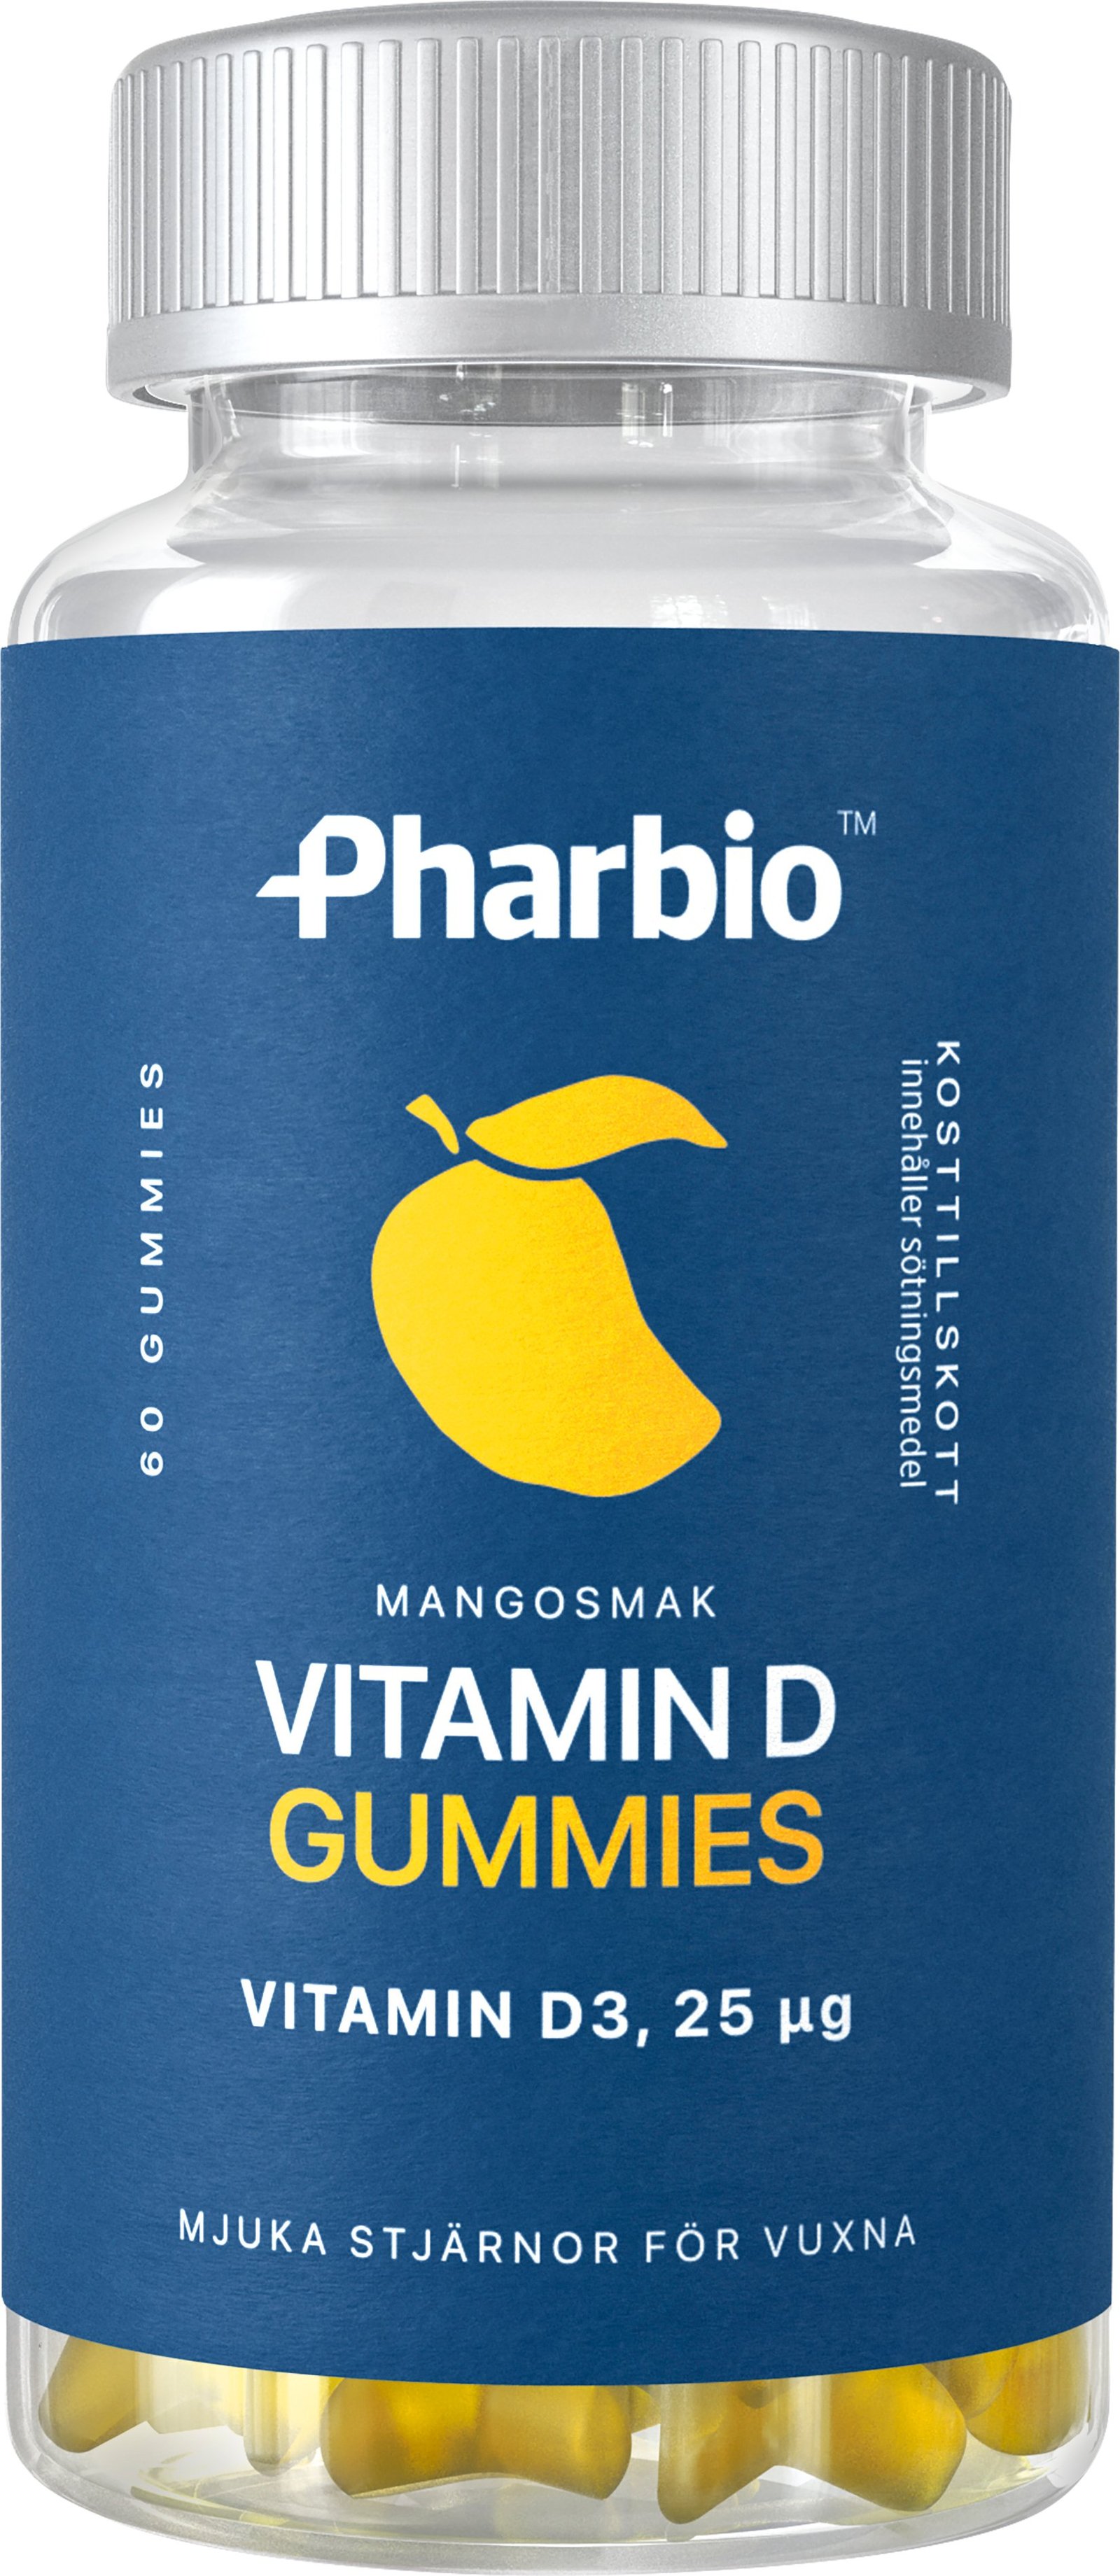 Pharbio Vitamin D Gummies 60 tuggtabletter